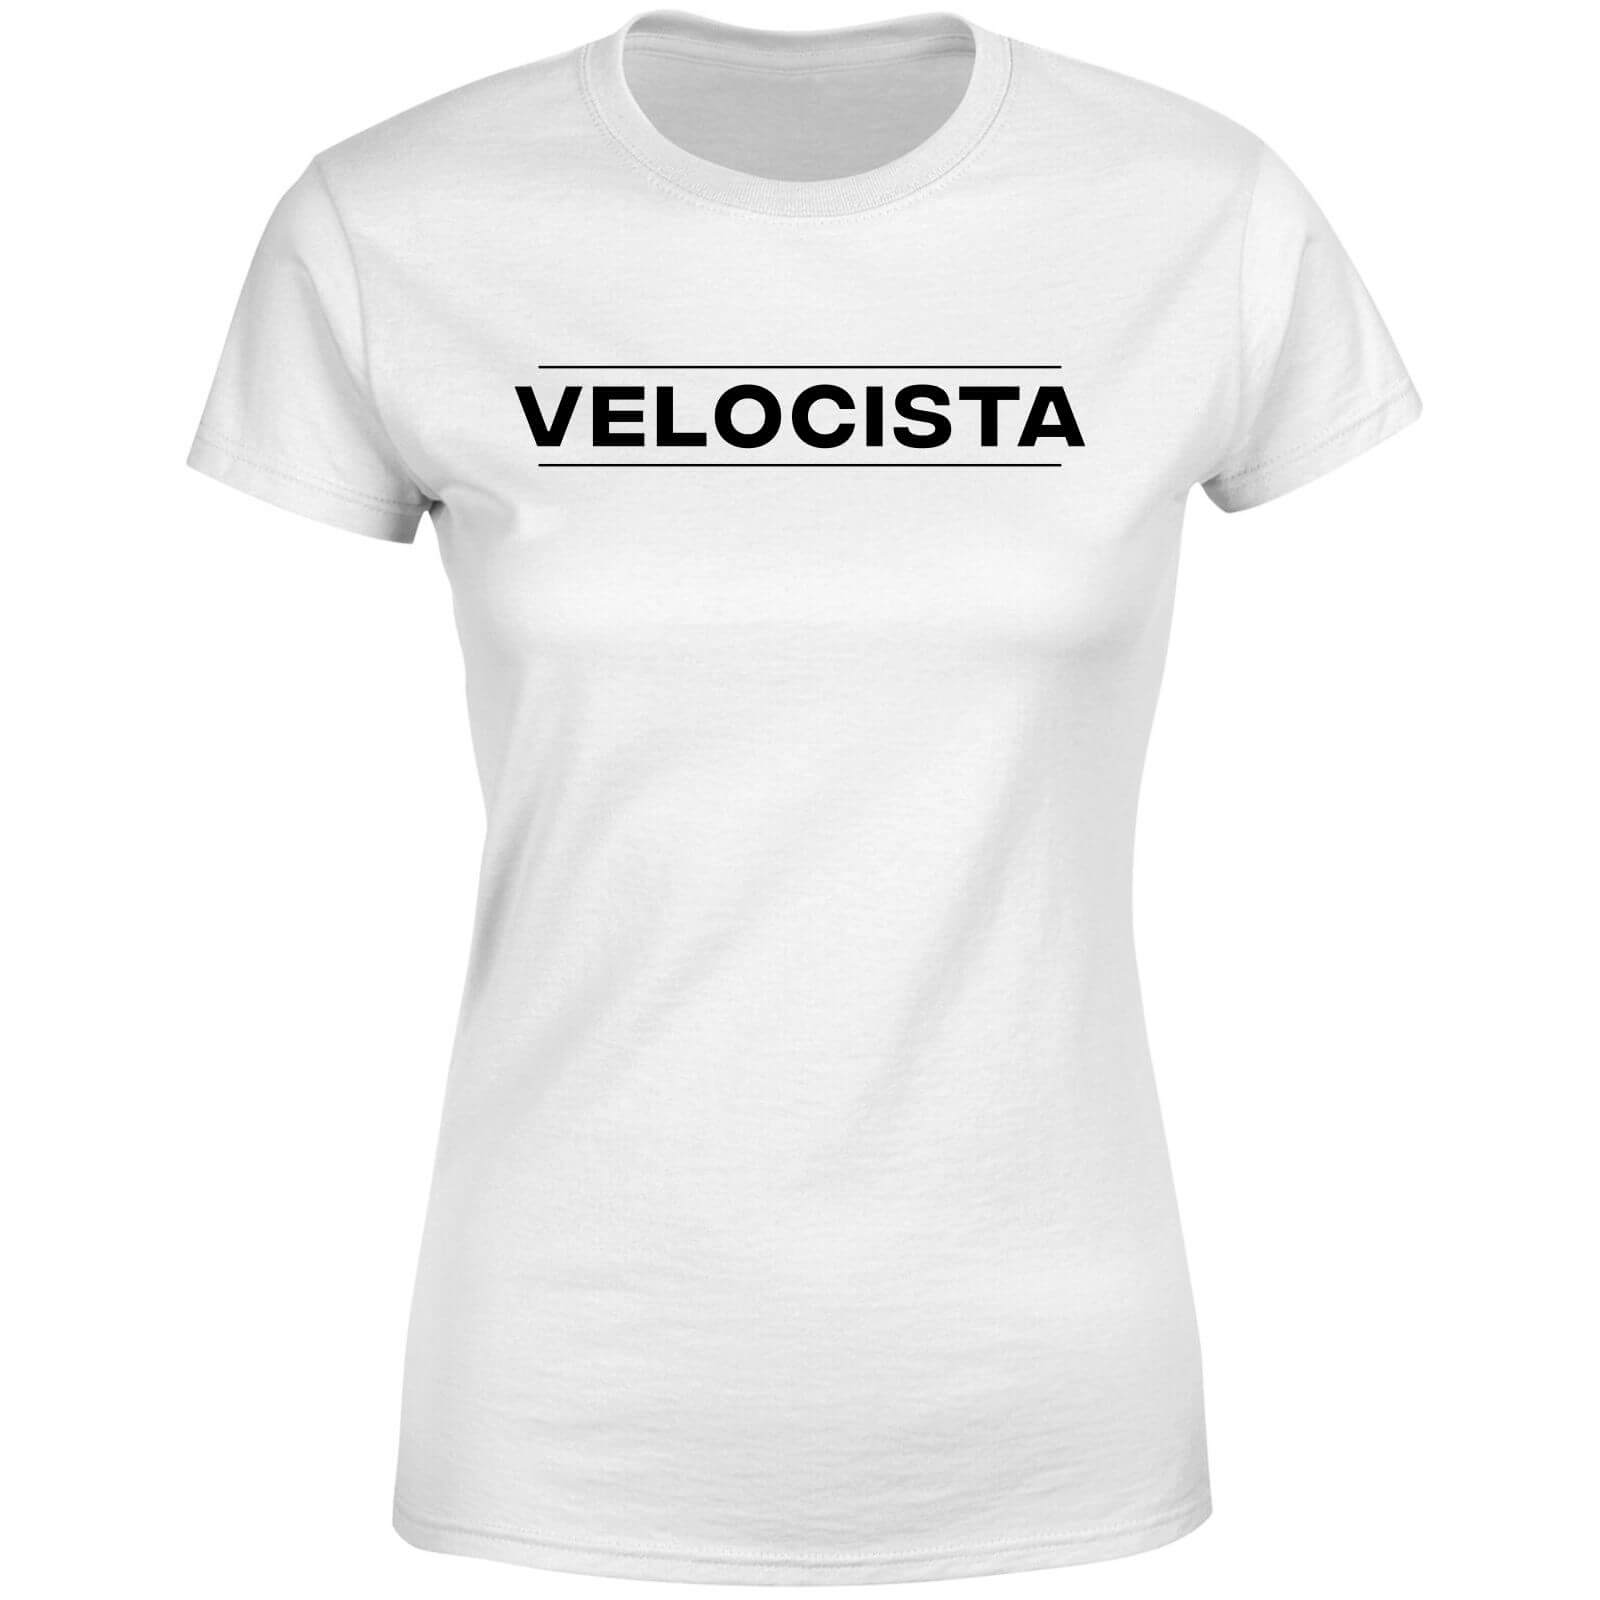 Velocista Women's T-Shirt - White - M - White